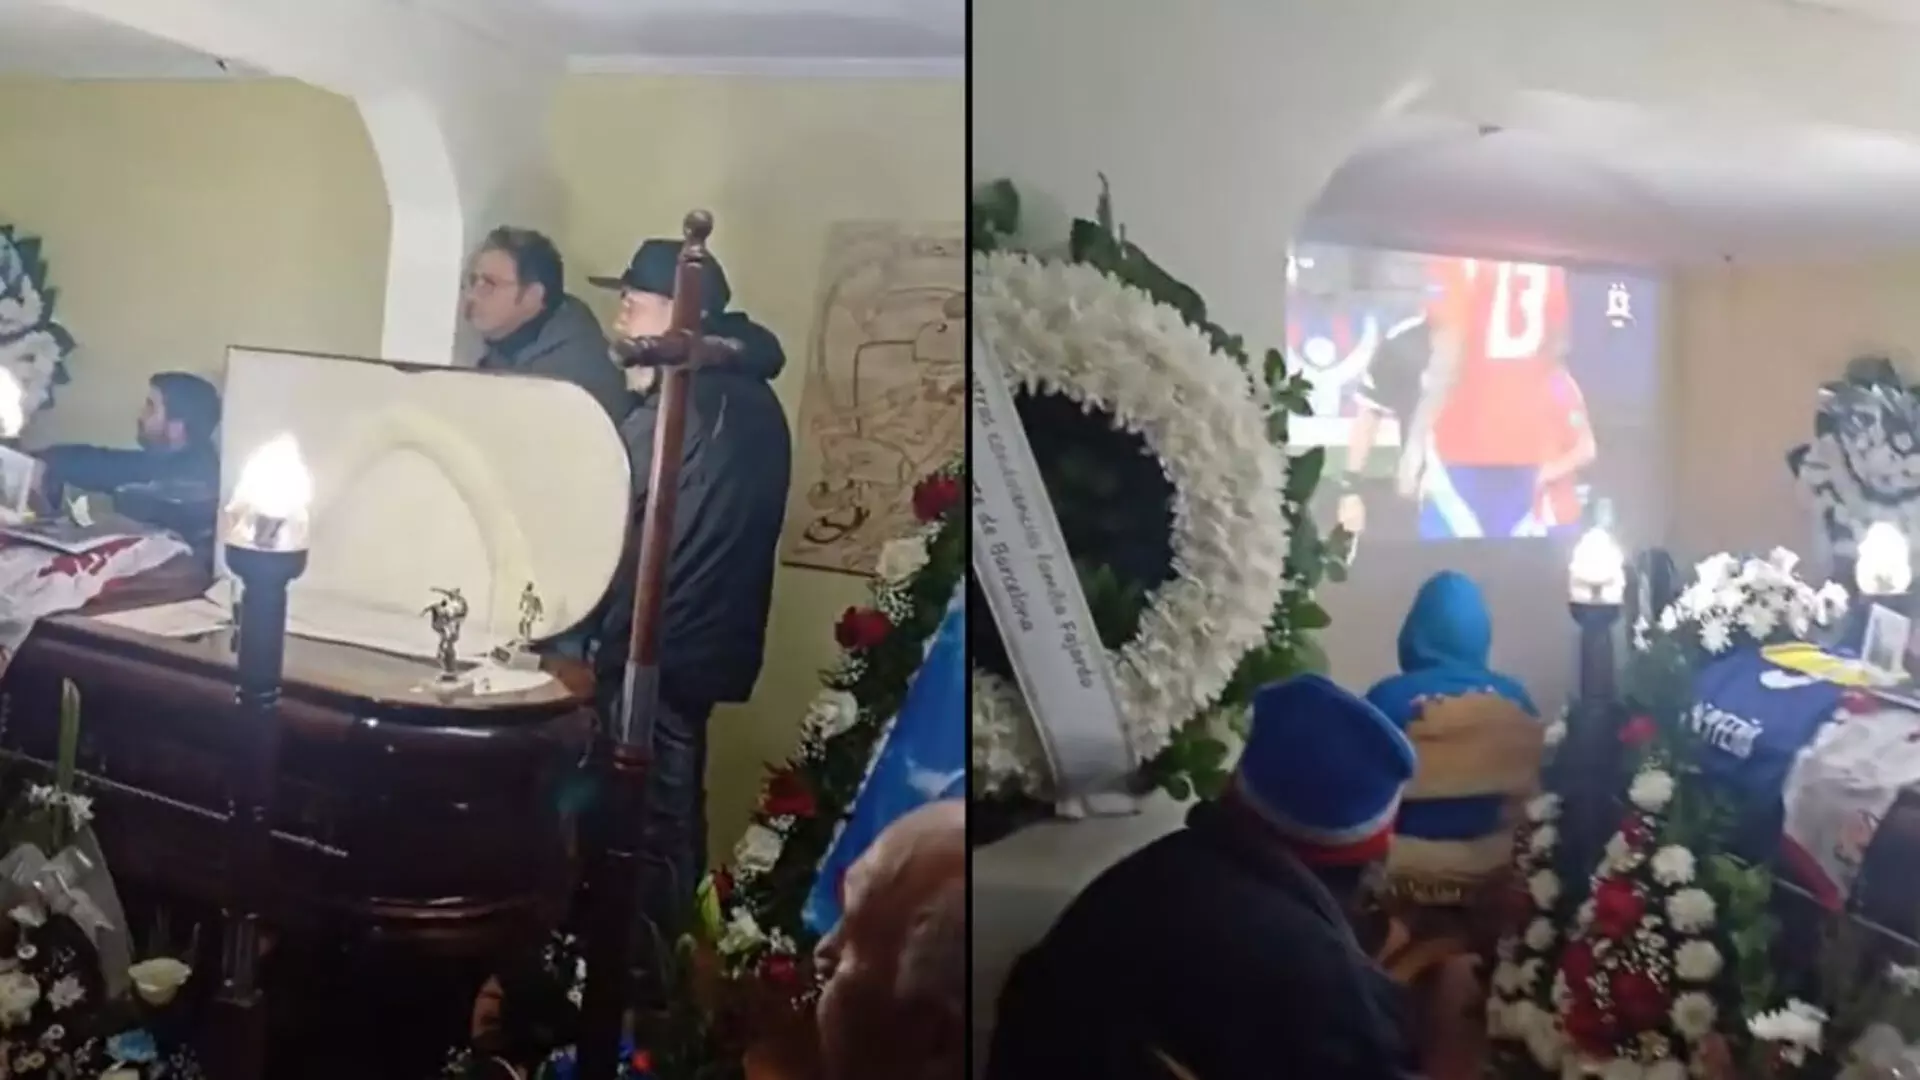 Chile: परिवार ने मृत शख्स के ताबूत के सामने चलाया फुटबॉल मैच, वीडियो वायरल